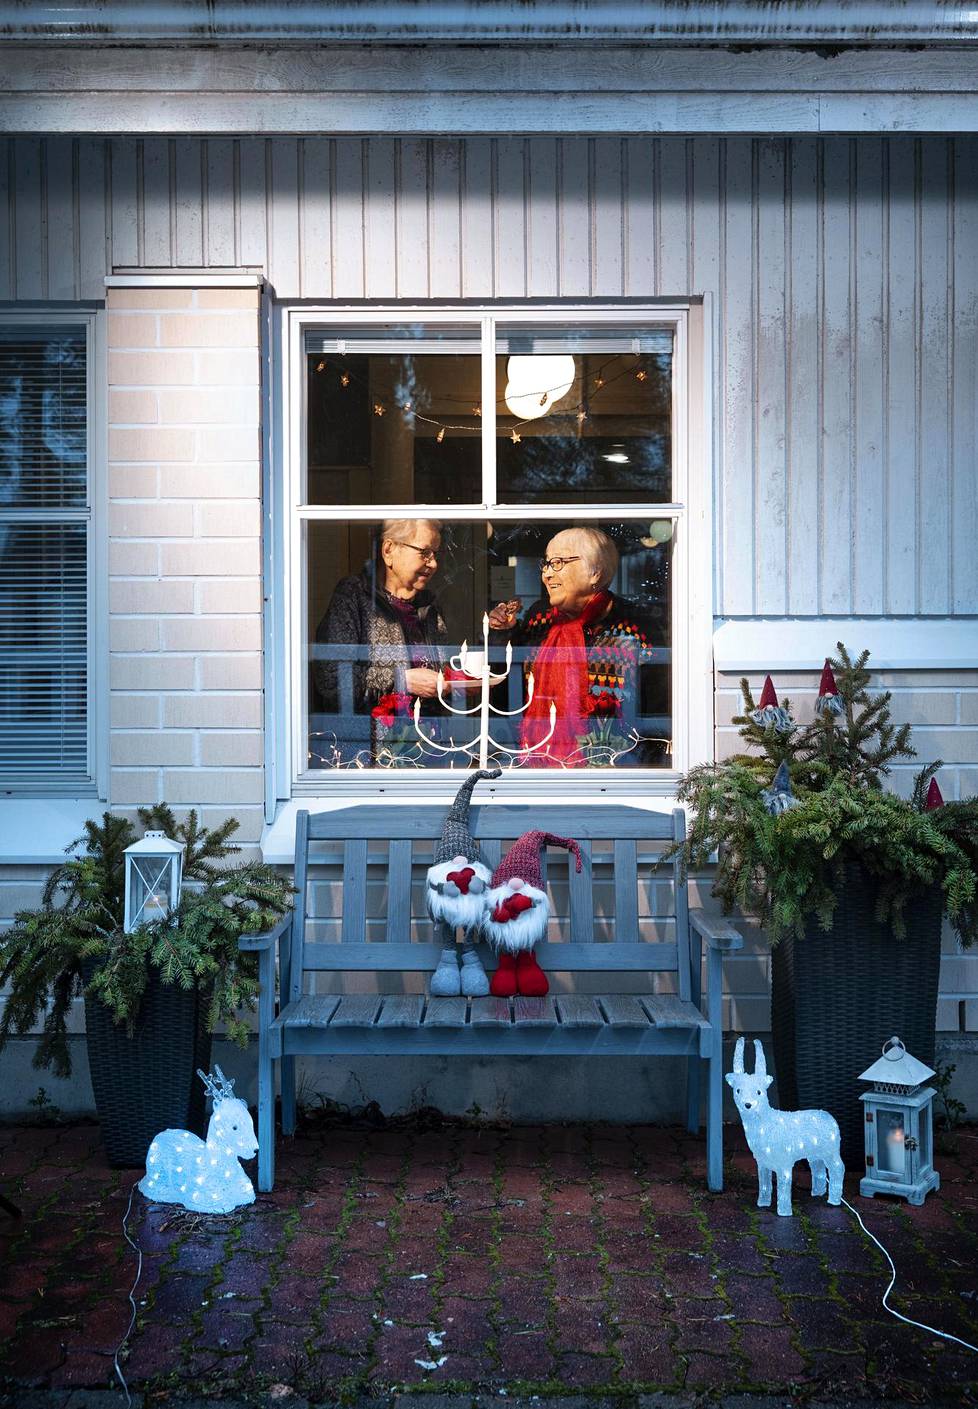 Joulukoristeet asetellaan palvelutalon ikkunaan joulukuun alussa. Tuulikki Tolvanen, 91, ja Kaisa Suhonen, 84, palvelukodin ikkunassa ennen aattoa.